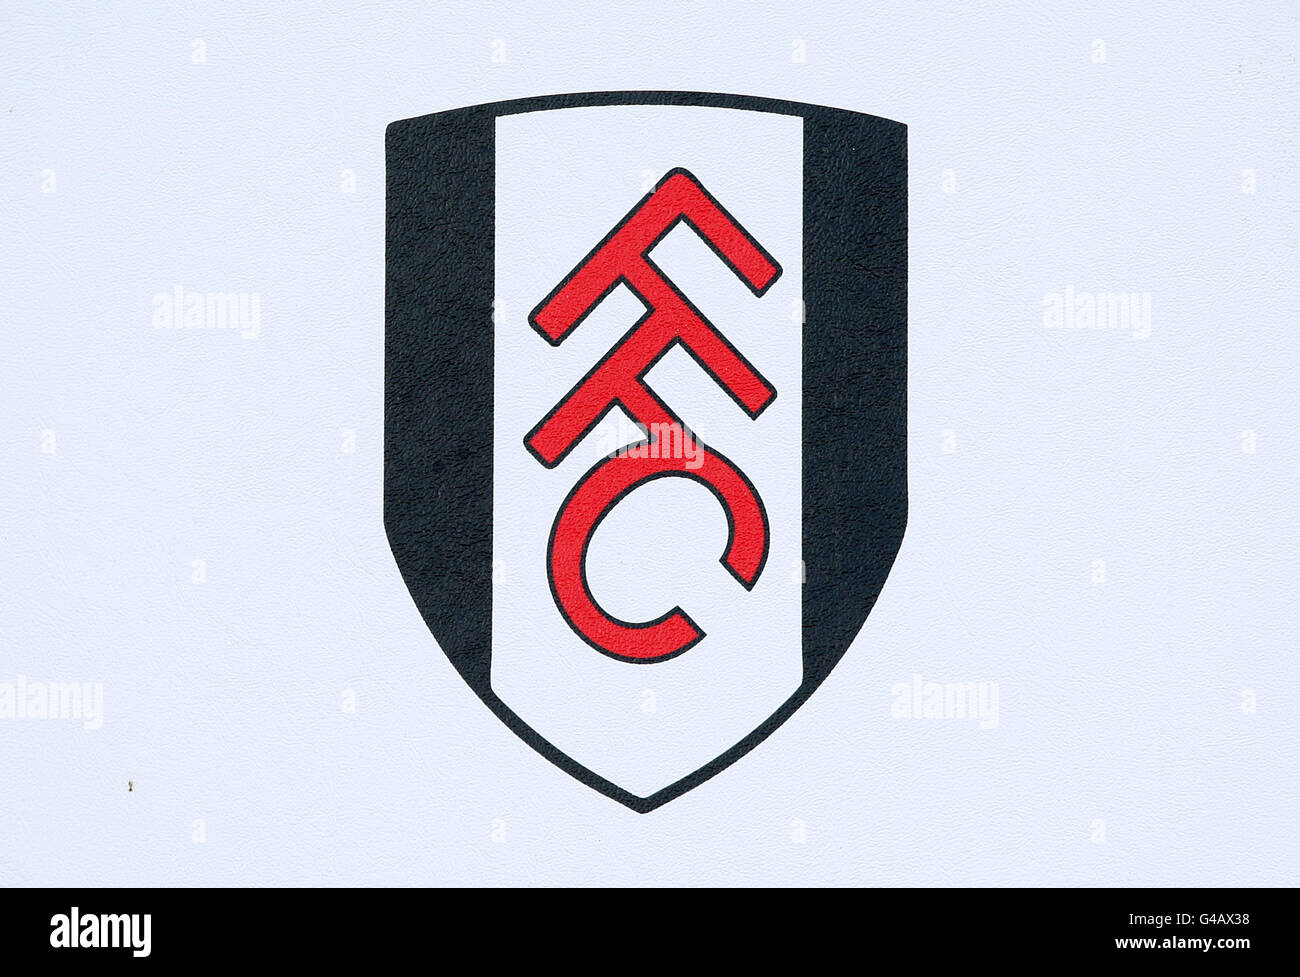 Calcio - Barclays Premier League - Fulham v Arsenal - Craven Cottage. Logo Fulham. Foto Stock